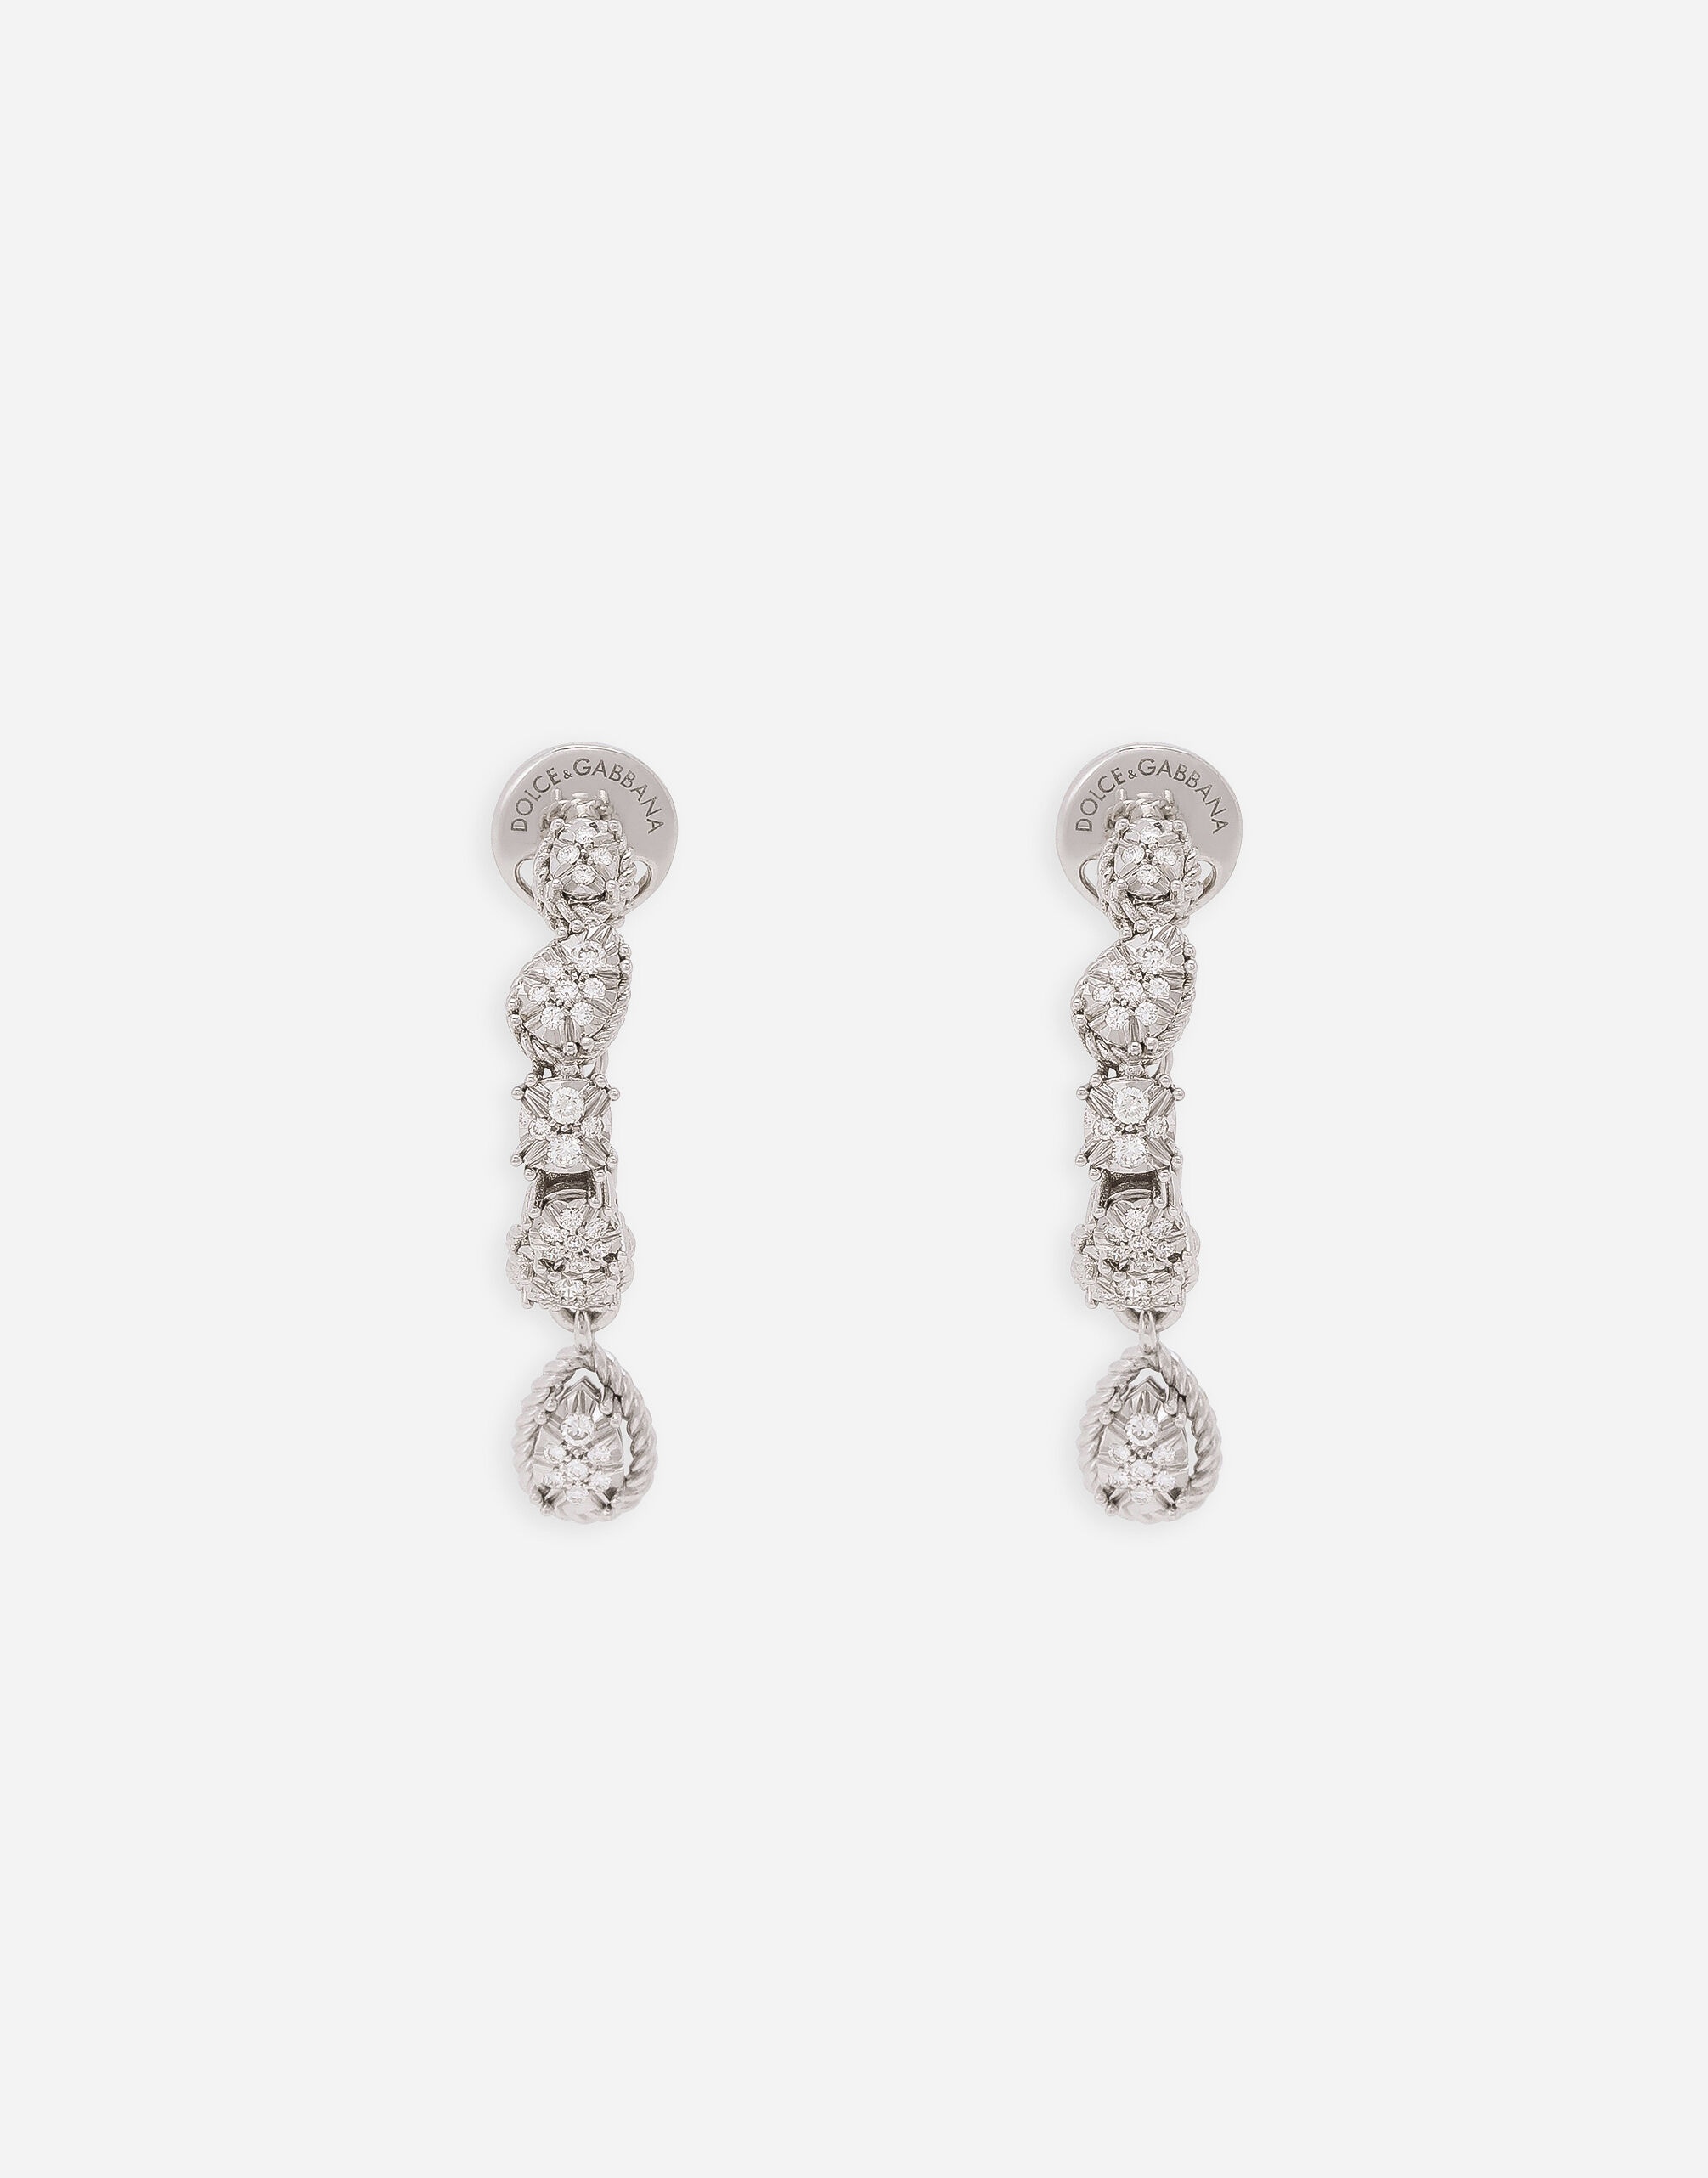 Easy Diamond earrings in white gold 18kt and diamonds pavé - 1